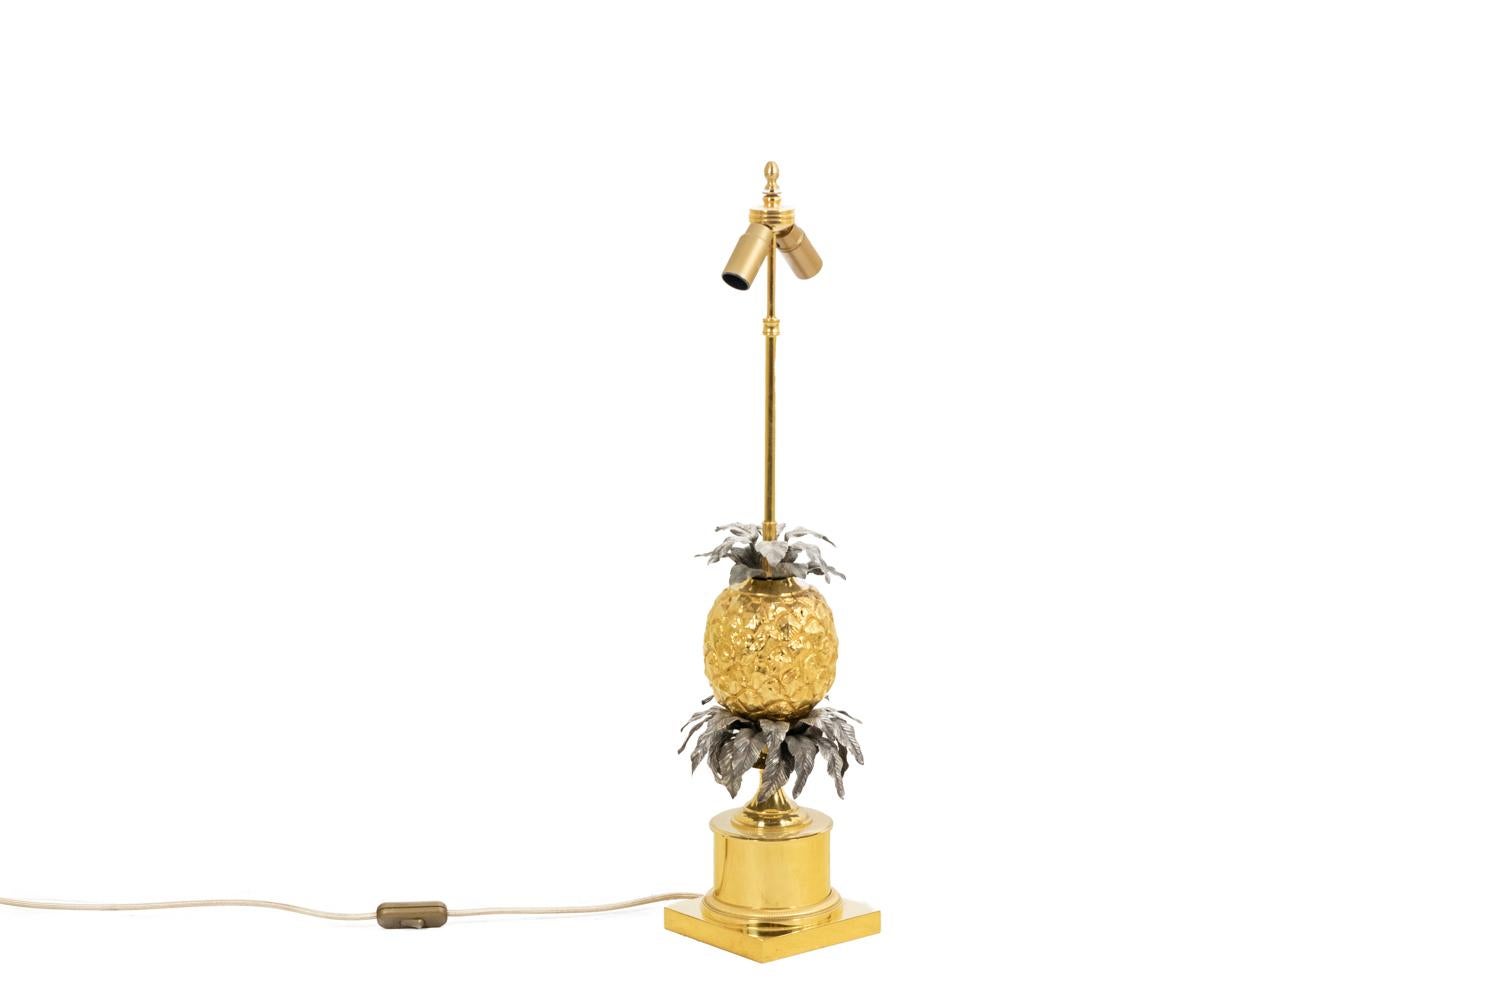 Maison Maison Charles, par.

Grande lampe représentant un ananas stylisé en bronze doré et couronné de feuilles en laiton repoussé et doré. Sous l'ananas, l'arbre est symbolisé par une plus importante triple couronne de feuilles en laiton doré.